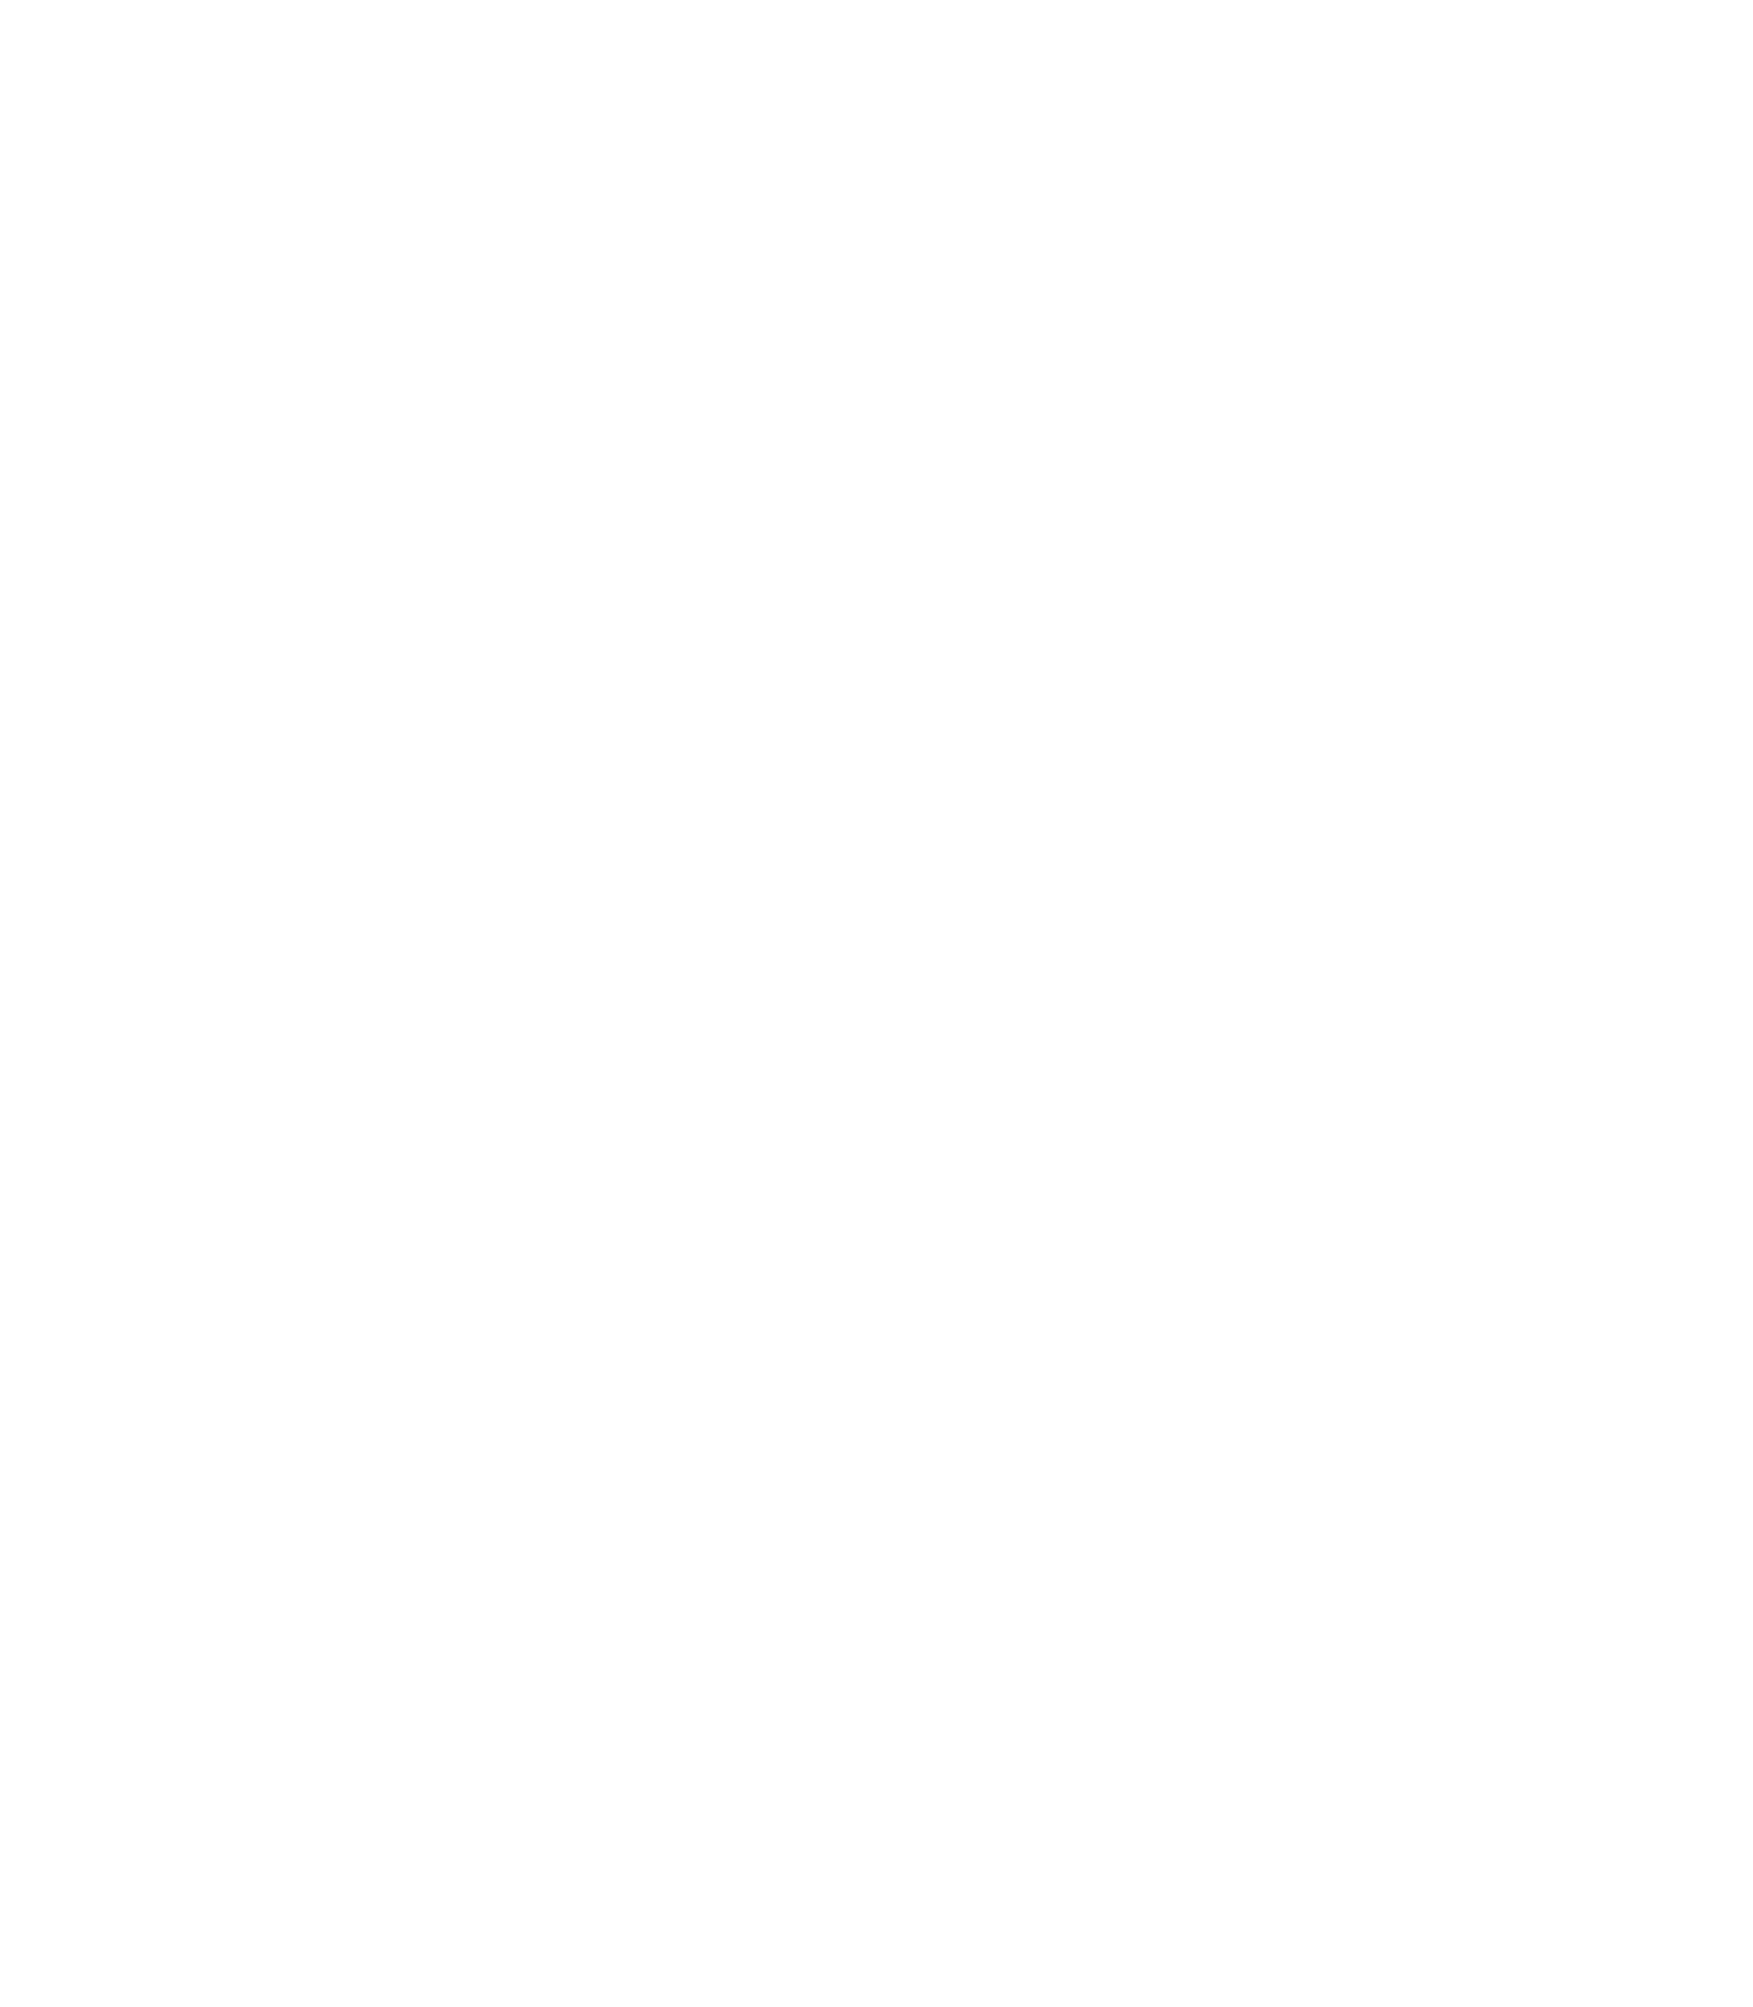 Phamwoaw